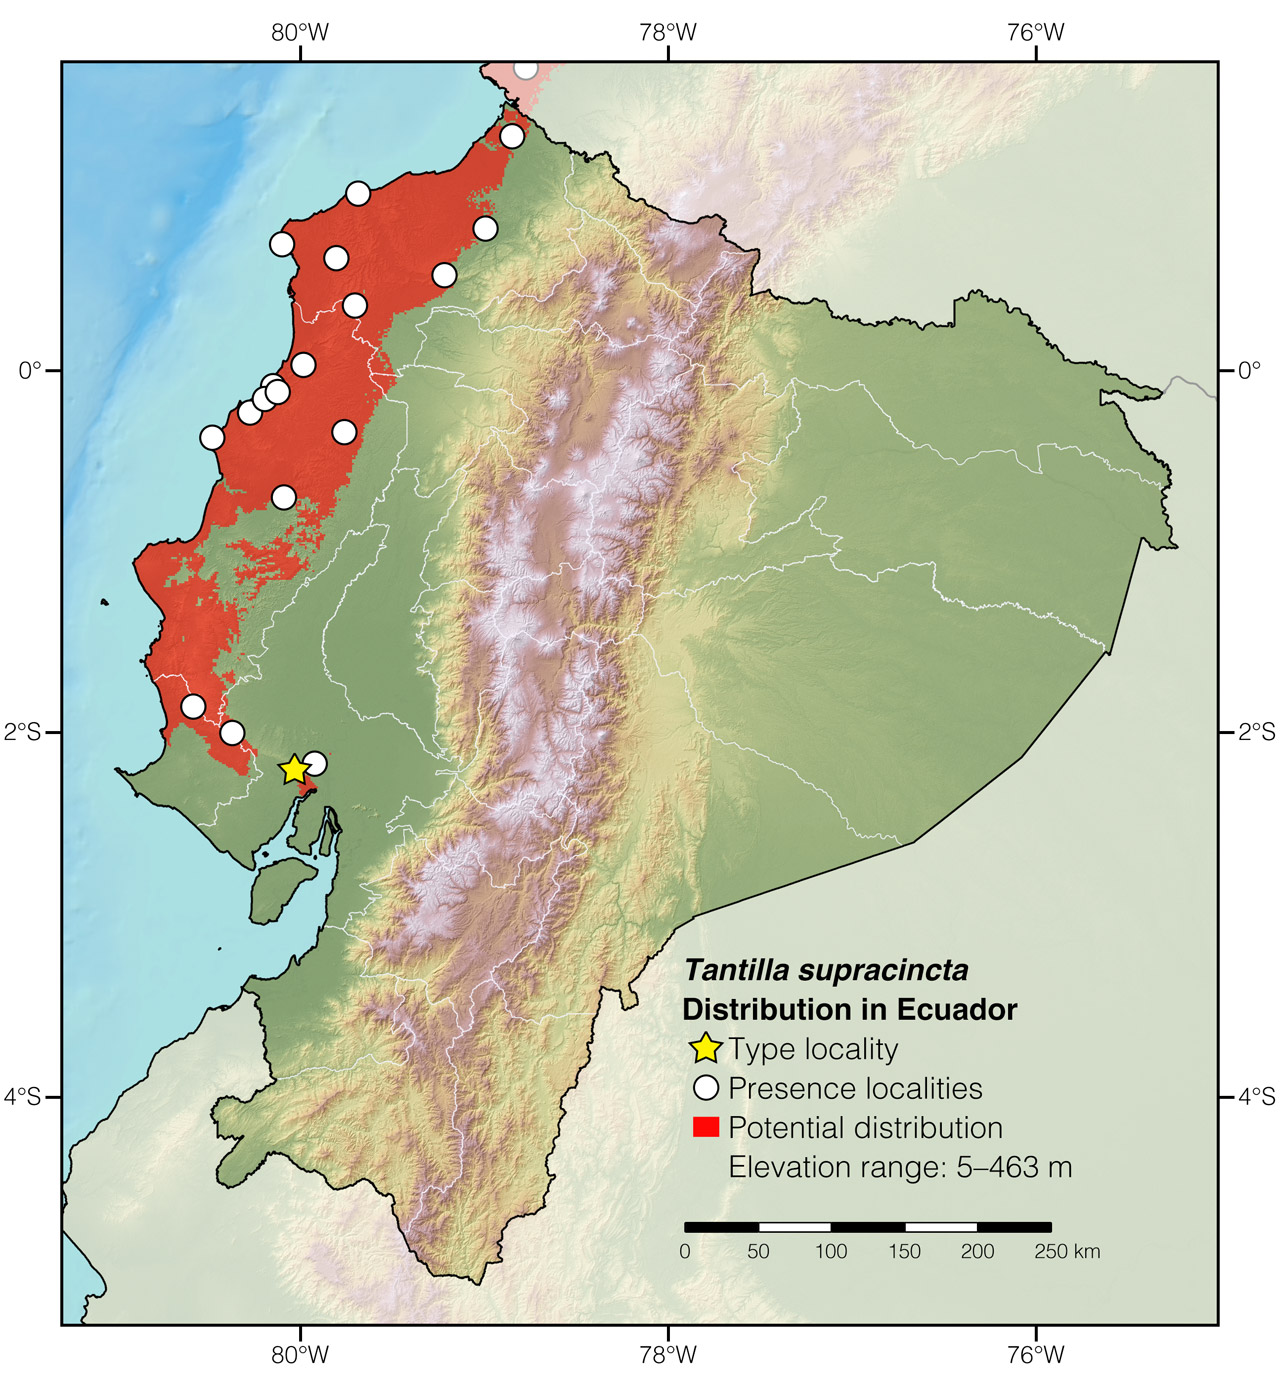 Distribution of Tantilla supracincta in Ecuador